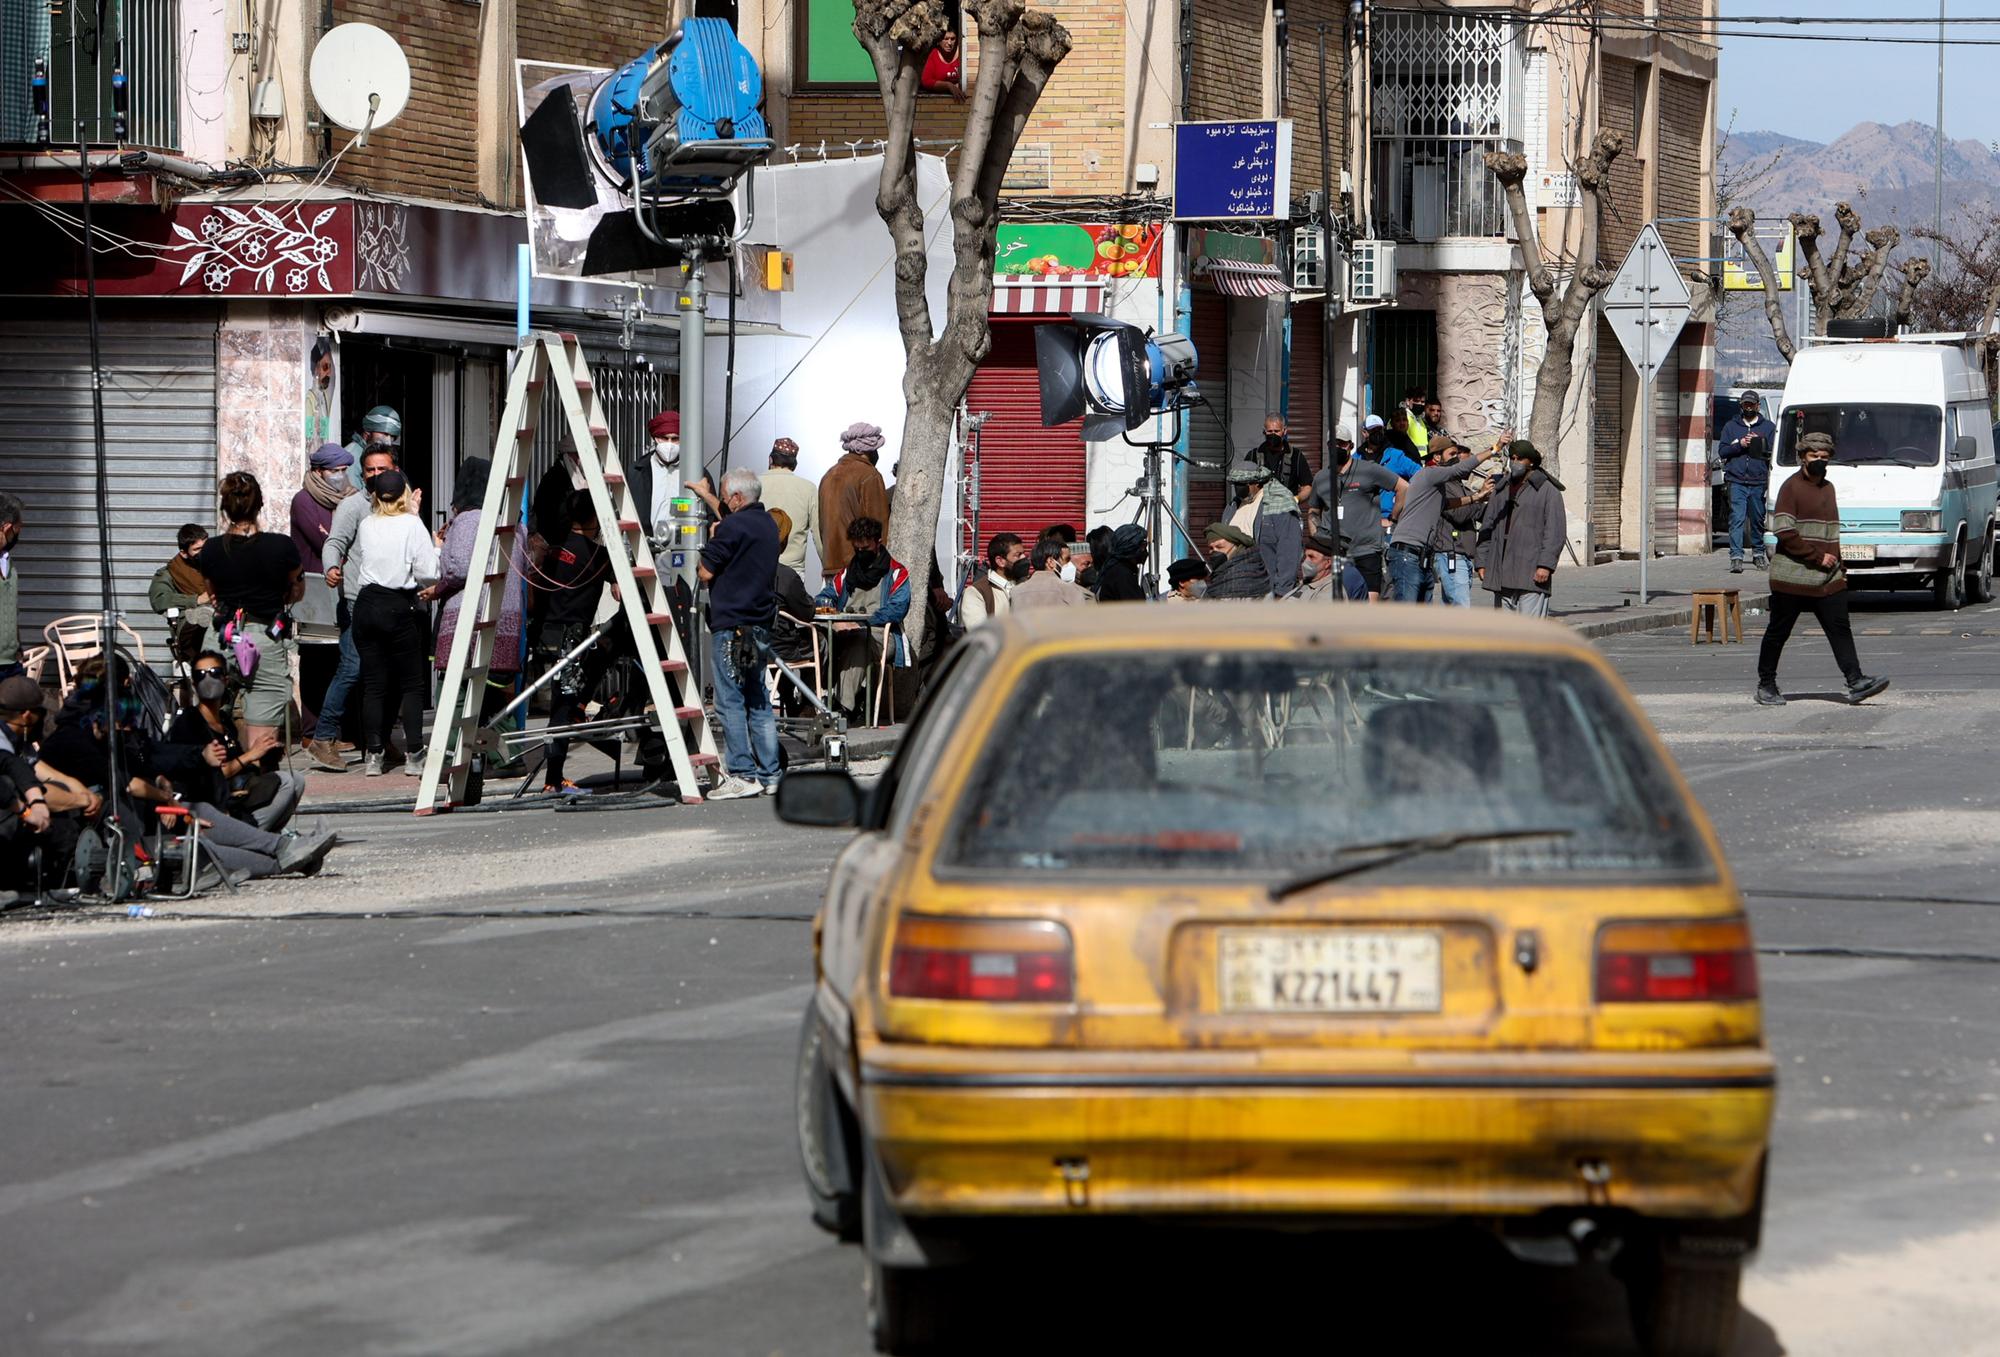 Segundo día del rodaje de la película "The Interpreter" del director Guy Ritchie en el barrio de Colonia Requena de Alicante